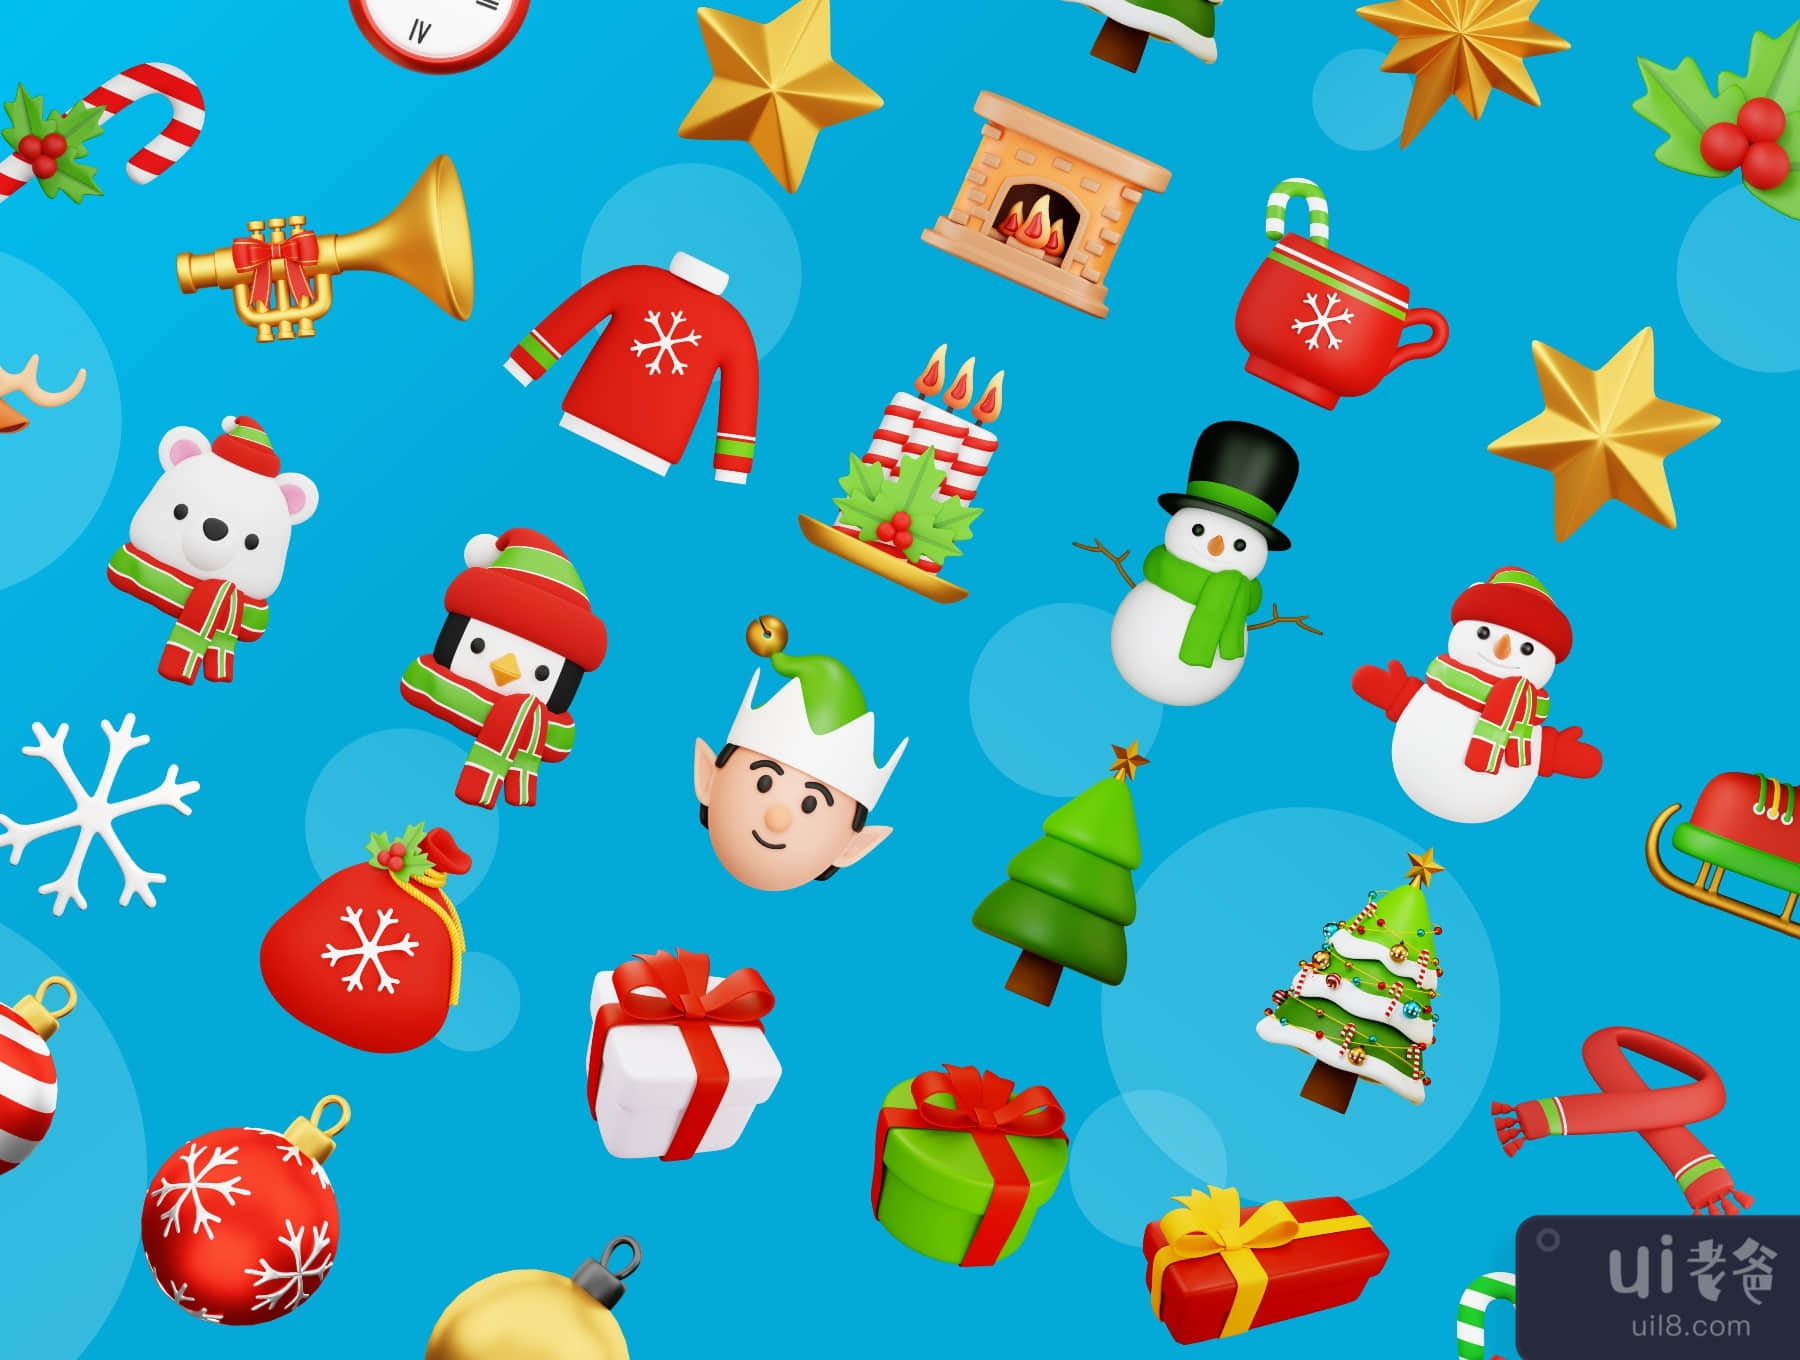 圣诞节3D图标插图 (Christmas 3D Icon Illustrations)插图7